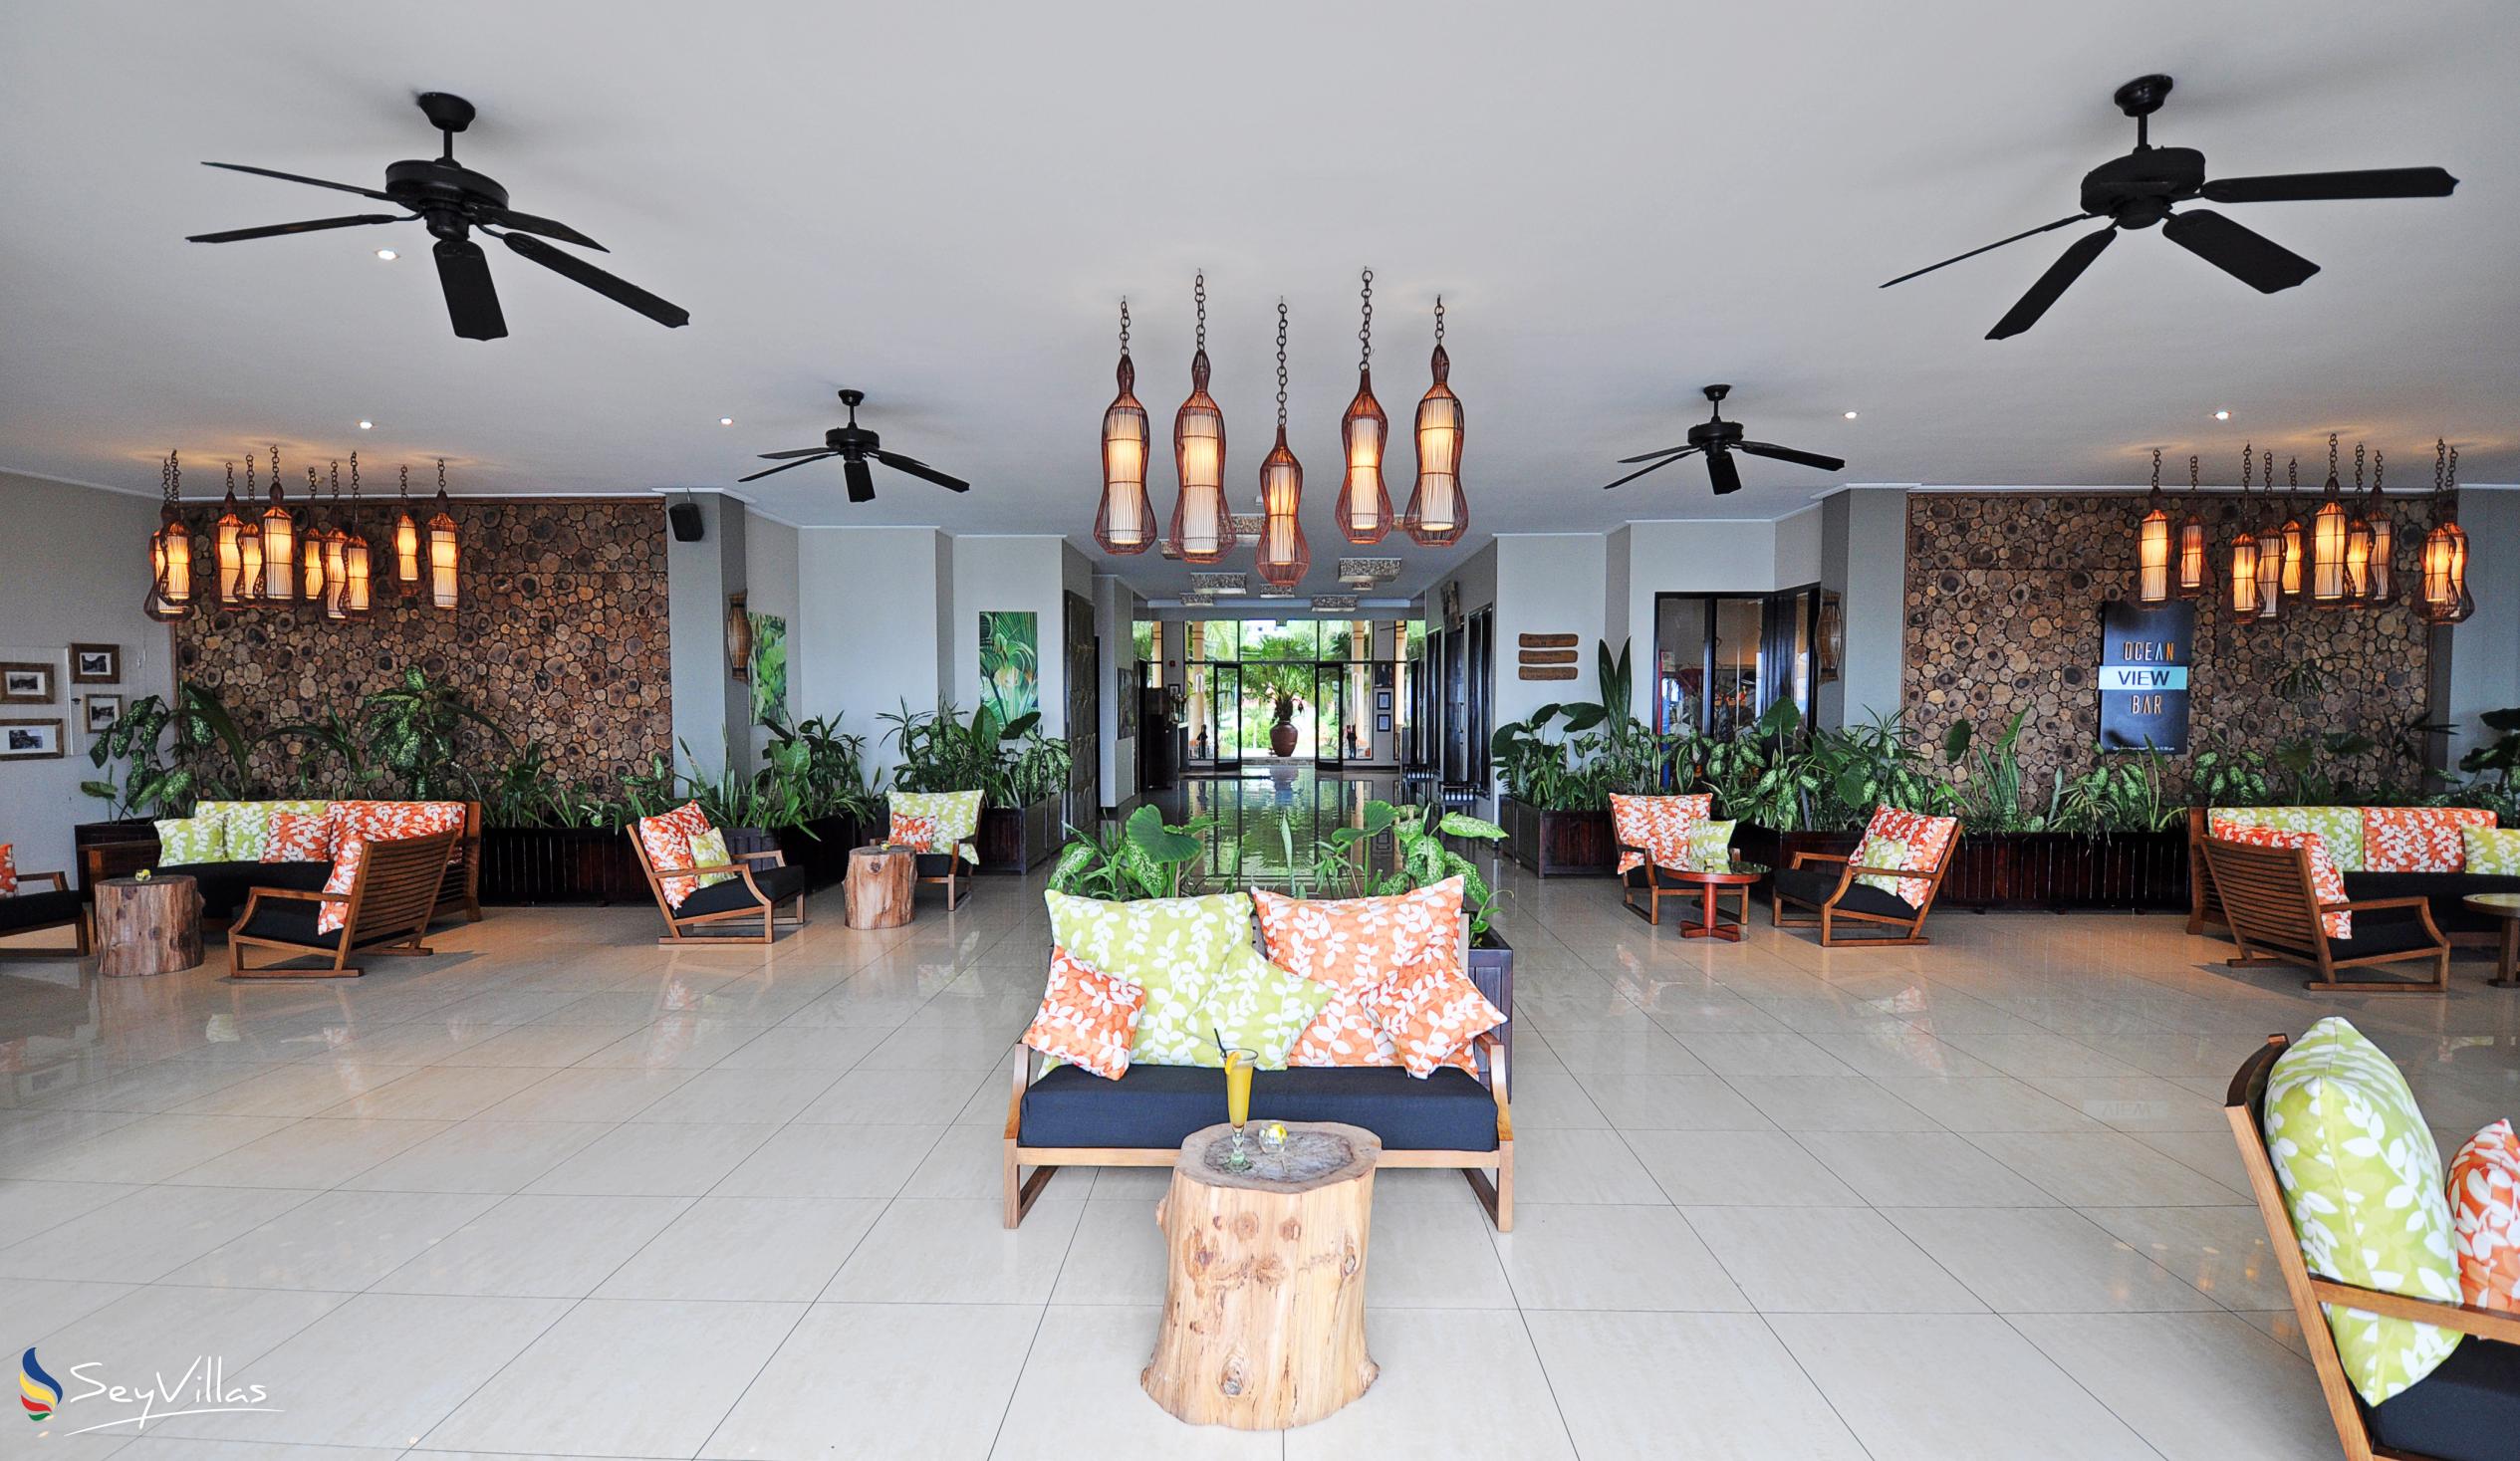 Photo 26: Double Tree by Hilton - Allamanda Resort & Spa - Indoor area - Mahé (Seychelles)